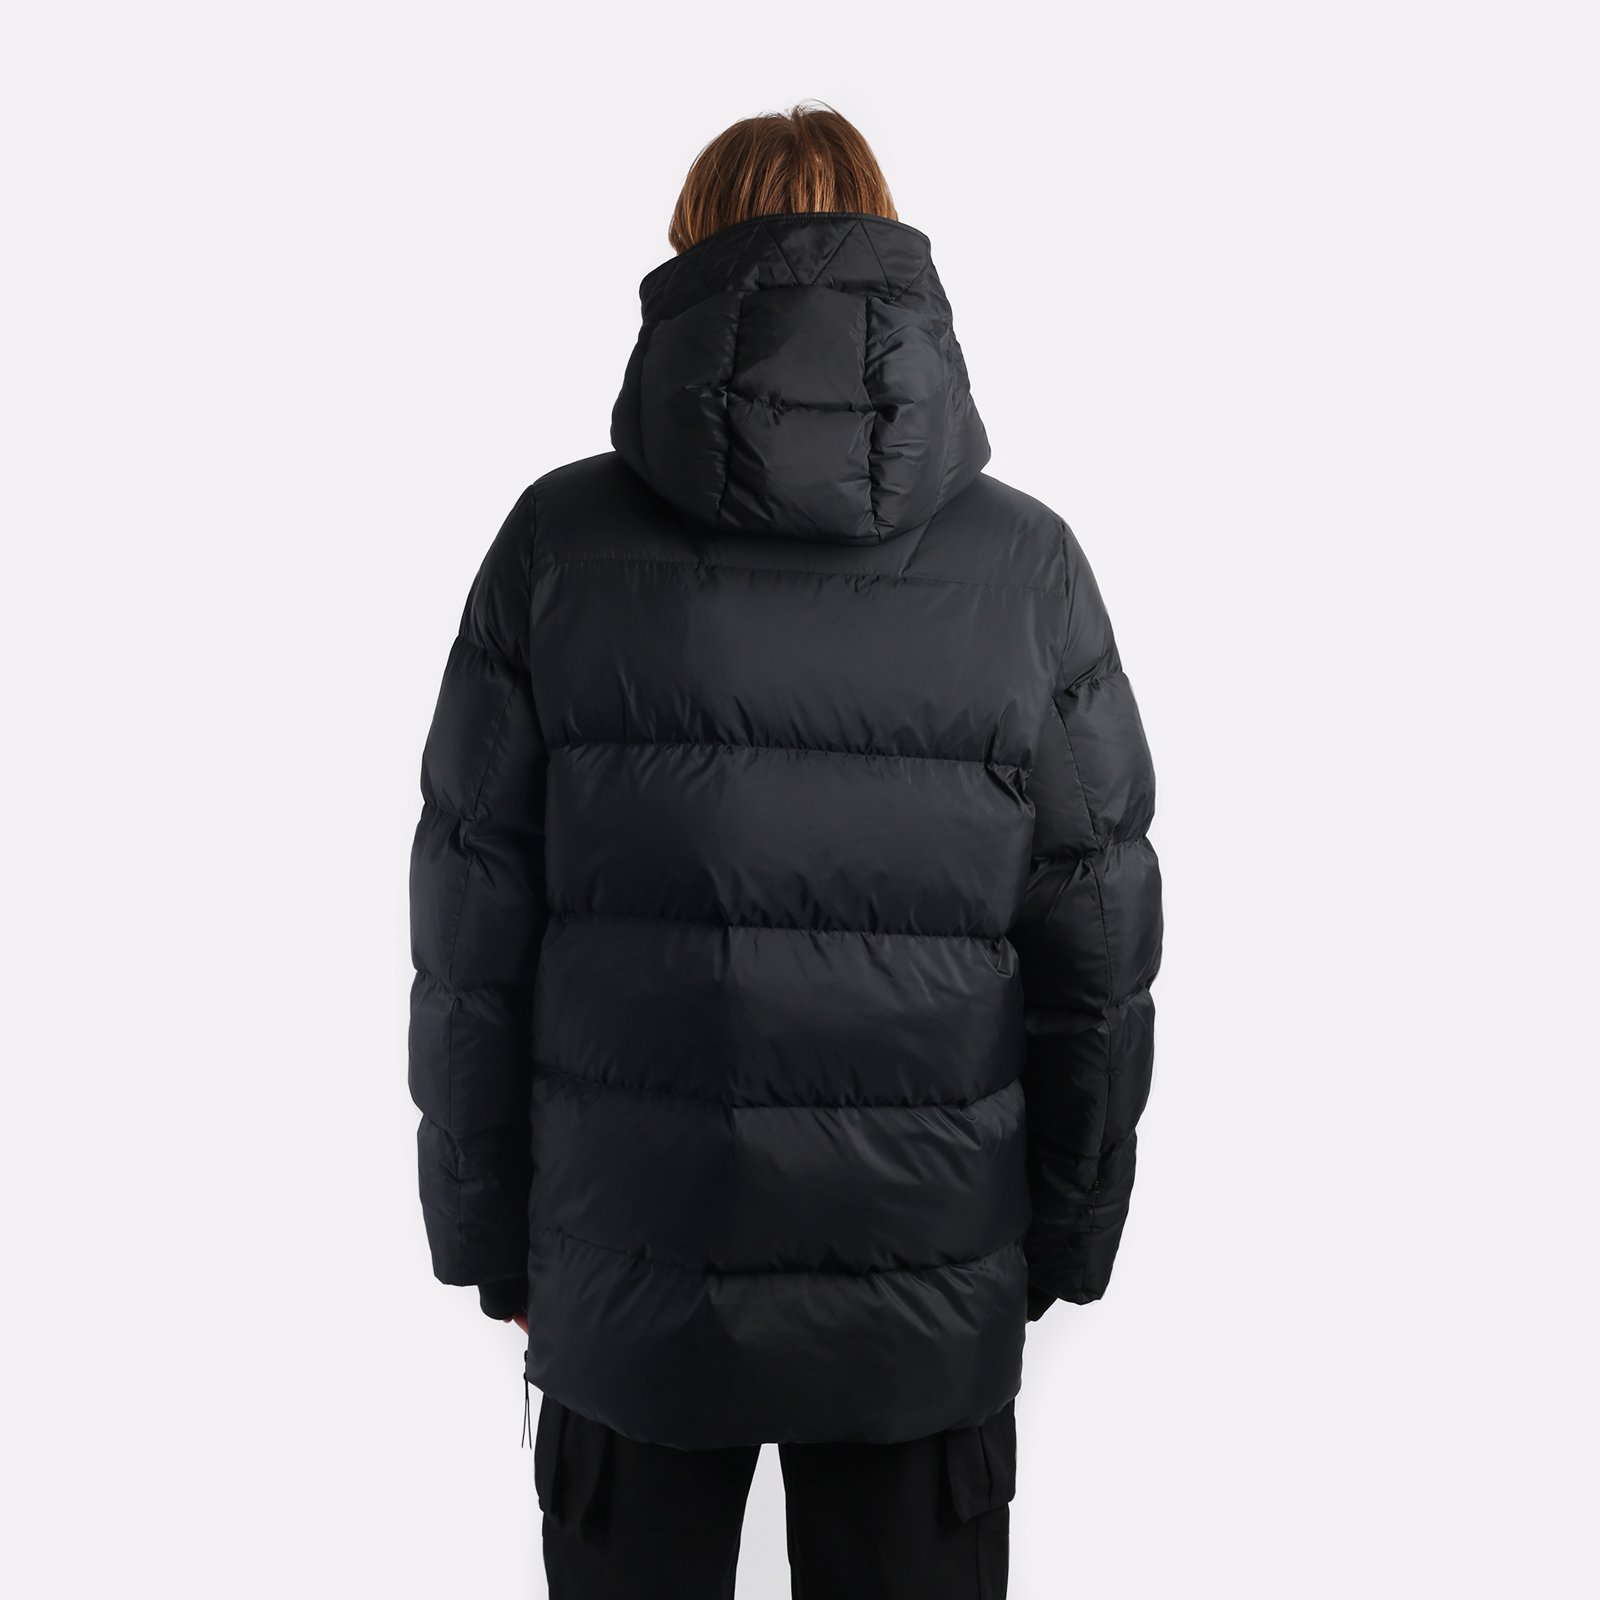 мужская куртка KRAKATAU Aitken  (Qm437-1-черный)  - цена, описание, фото 2